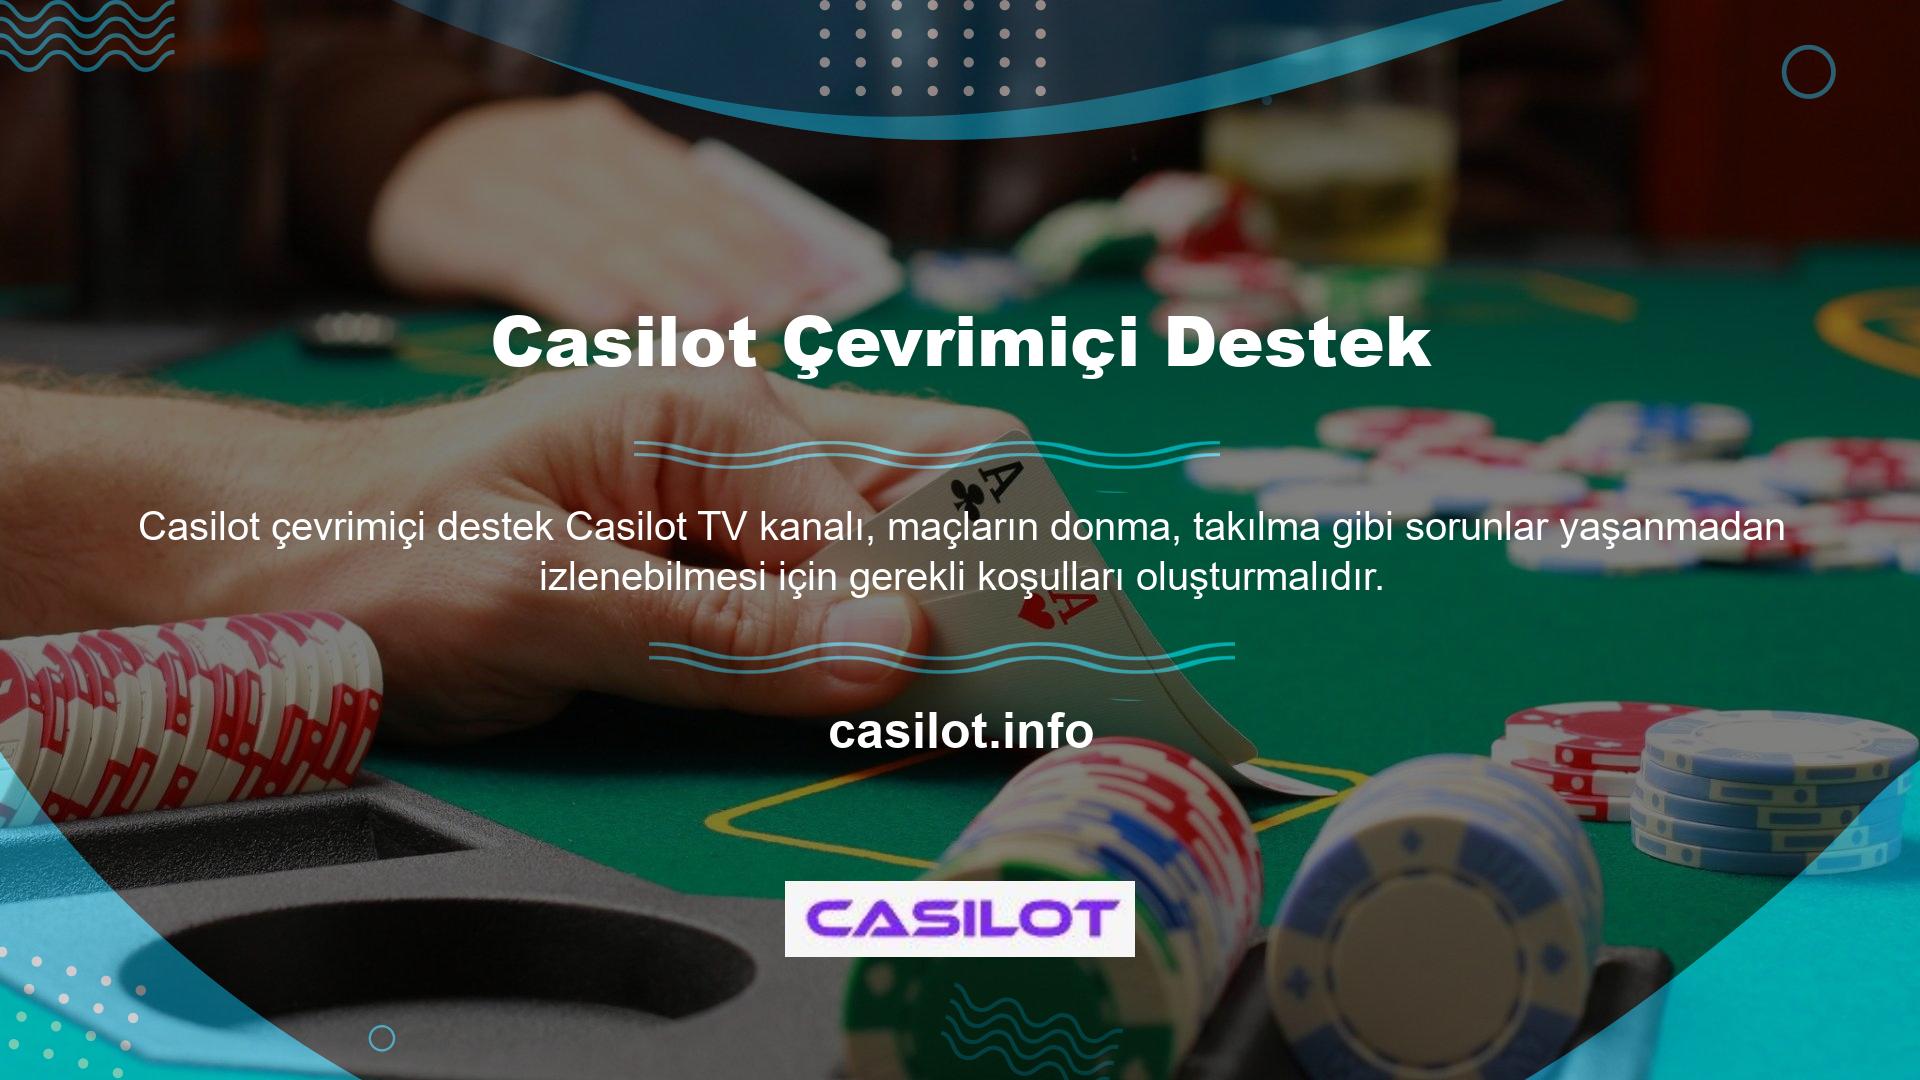 Doğrudan Casilot TV çevrimiçi desteği üzerinden giriş yapabiliyorsanız oyun seçeneği mevcuttur